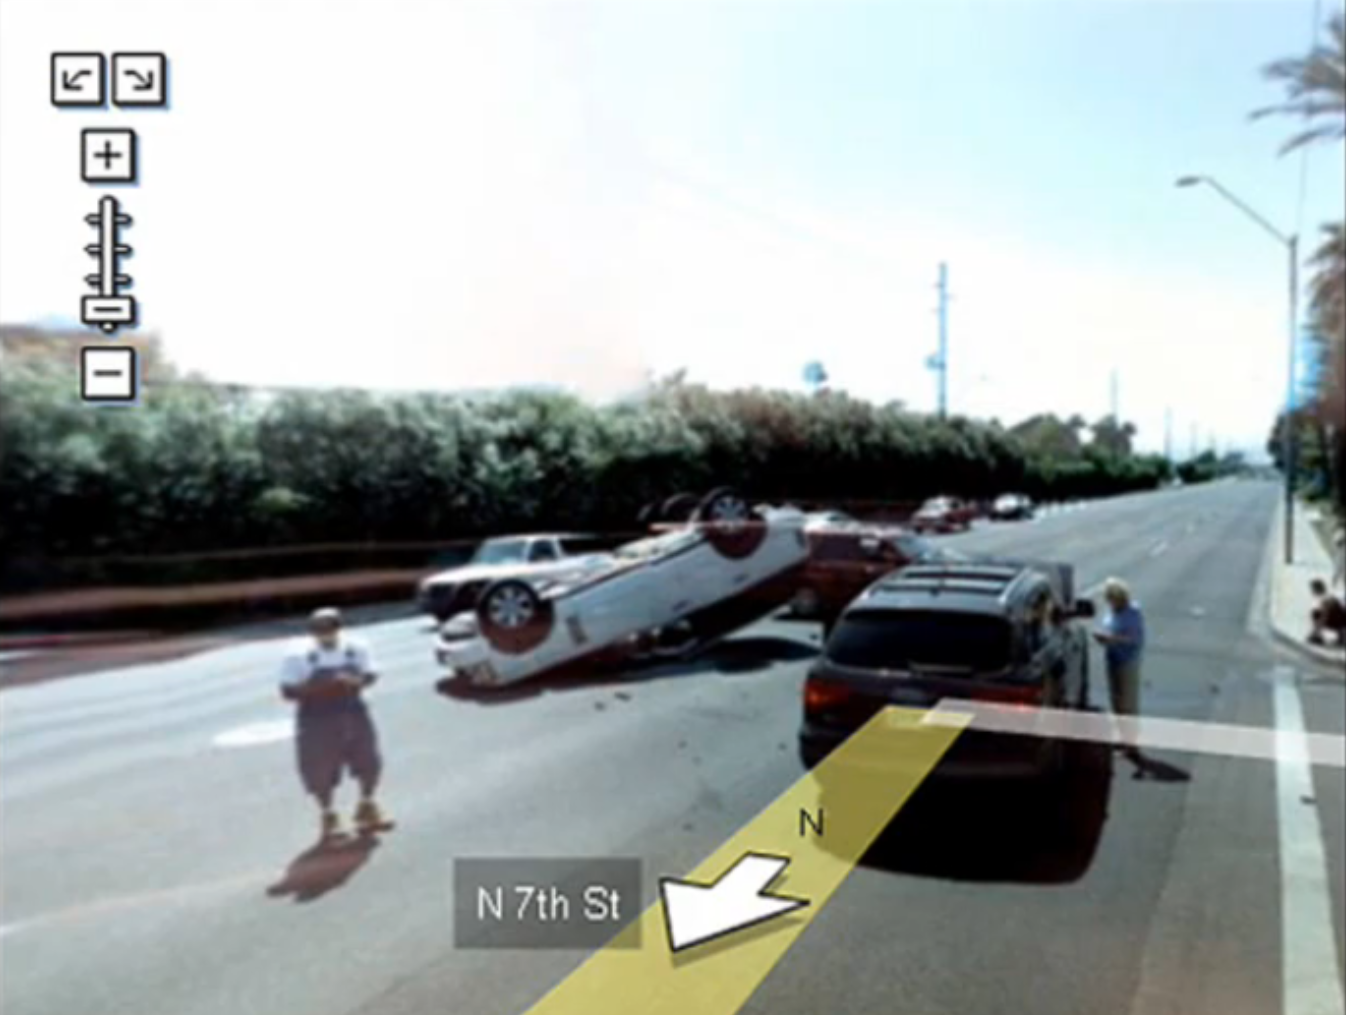 En bilolycka fotad på Google Maps.